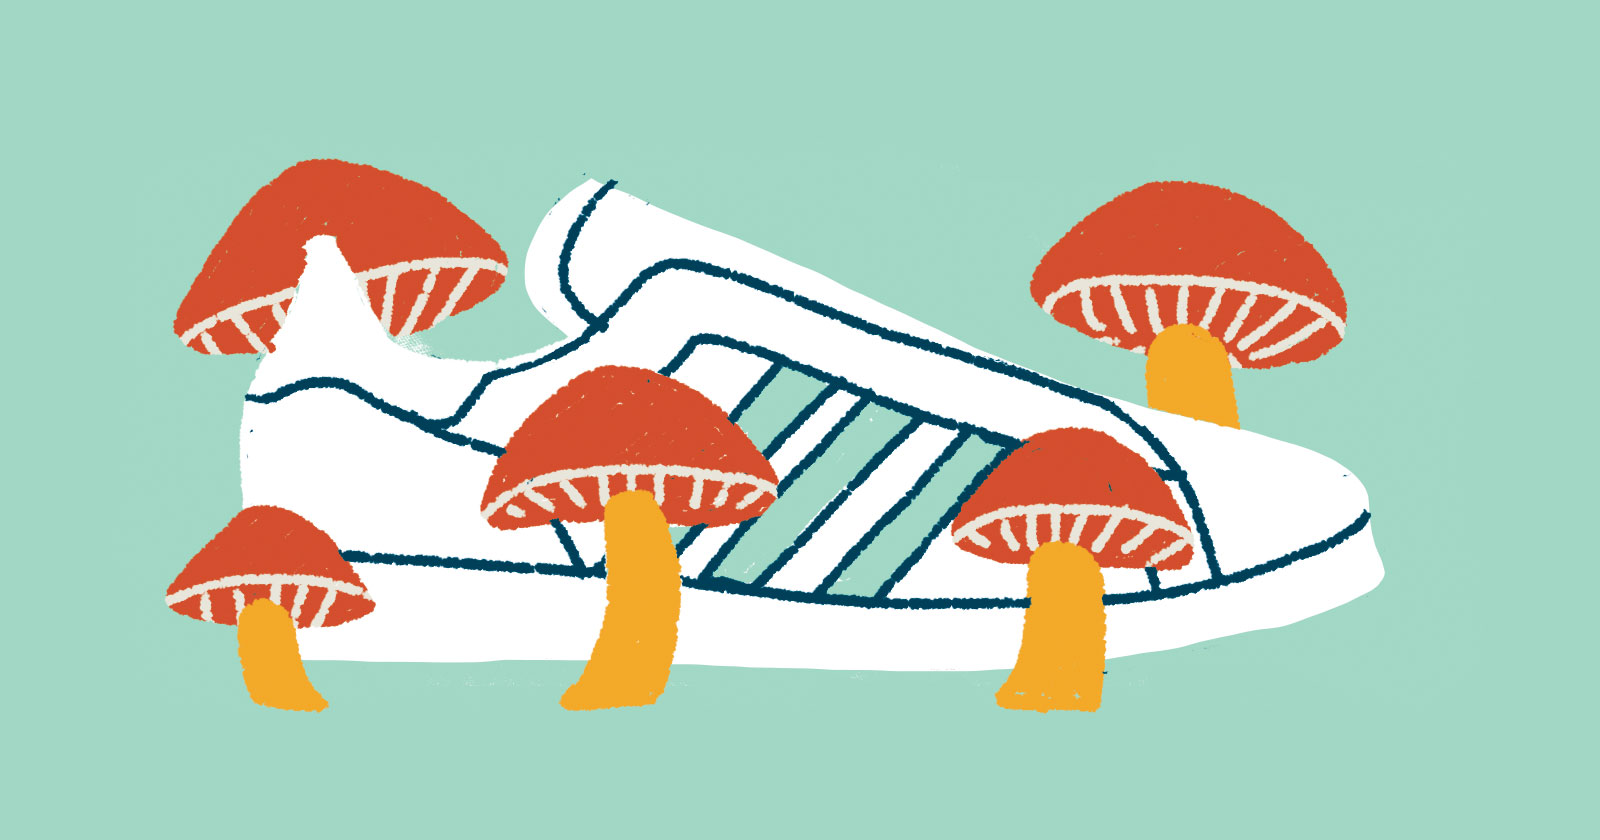 Geïllustreerde Adidas Schoen Omringd door Paddenstoelen